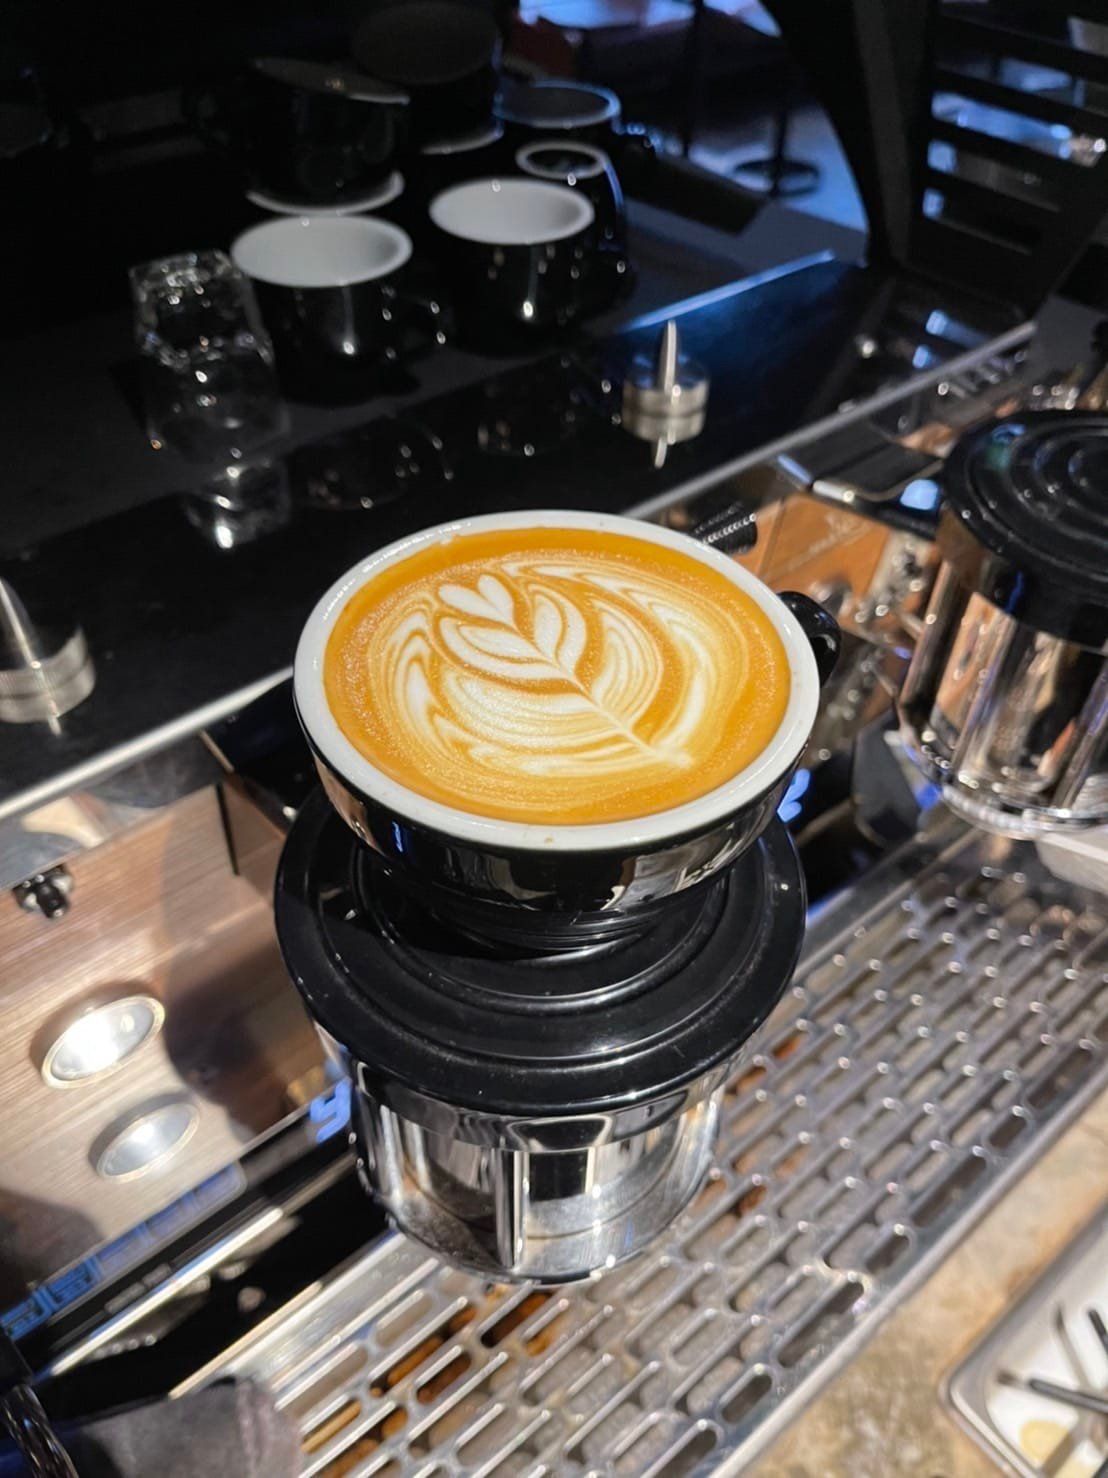 กาแฟใส่นม ลาเต้ คาเฟ่ขอนแก่น คาเฟ่ ขอนแก่น 2022 2565 ร้านกาแฟในขอนแก่น ร้าน godfarther-coffee